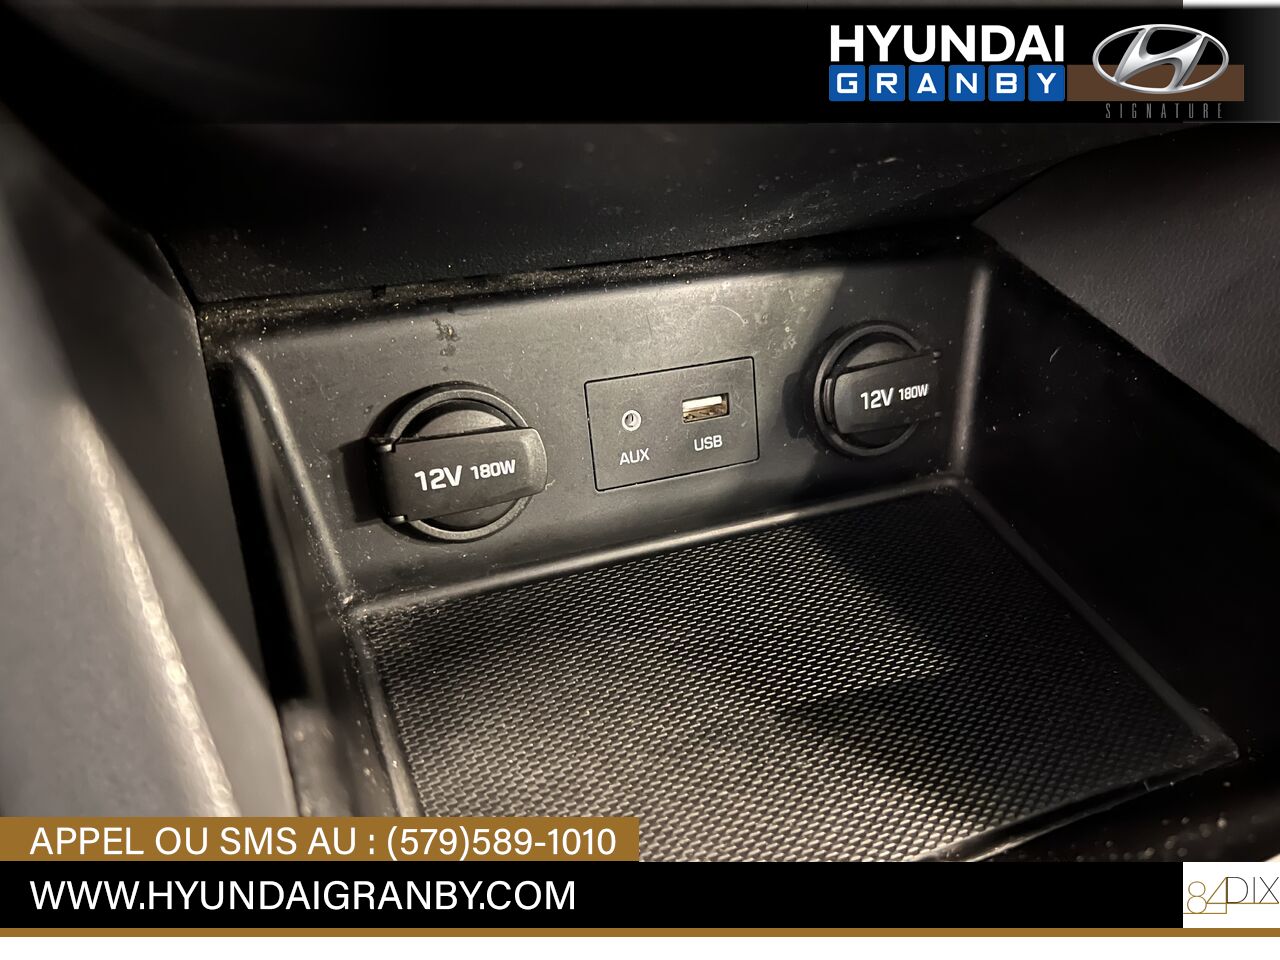 2017 Hyundai Ioniq hybride Granby - photo #18